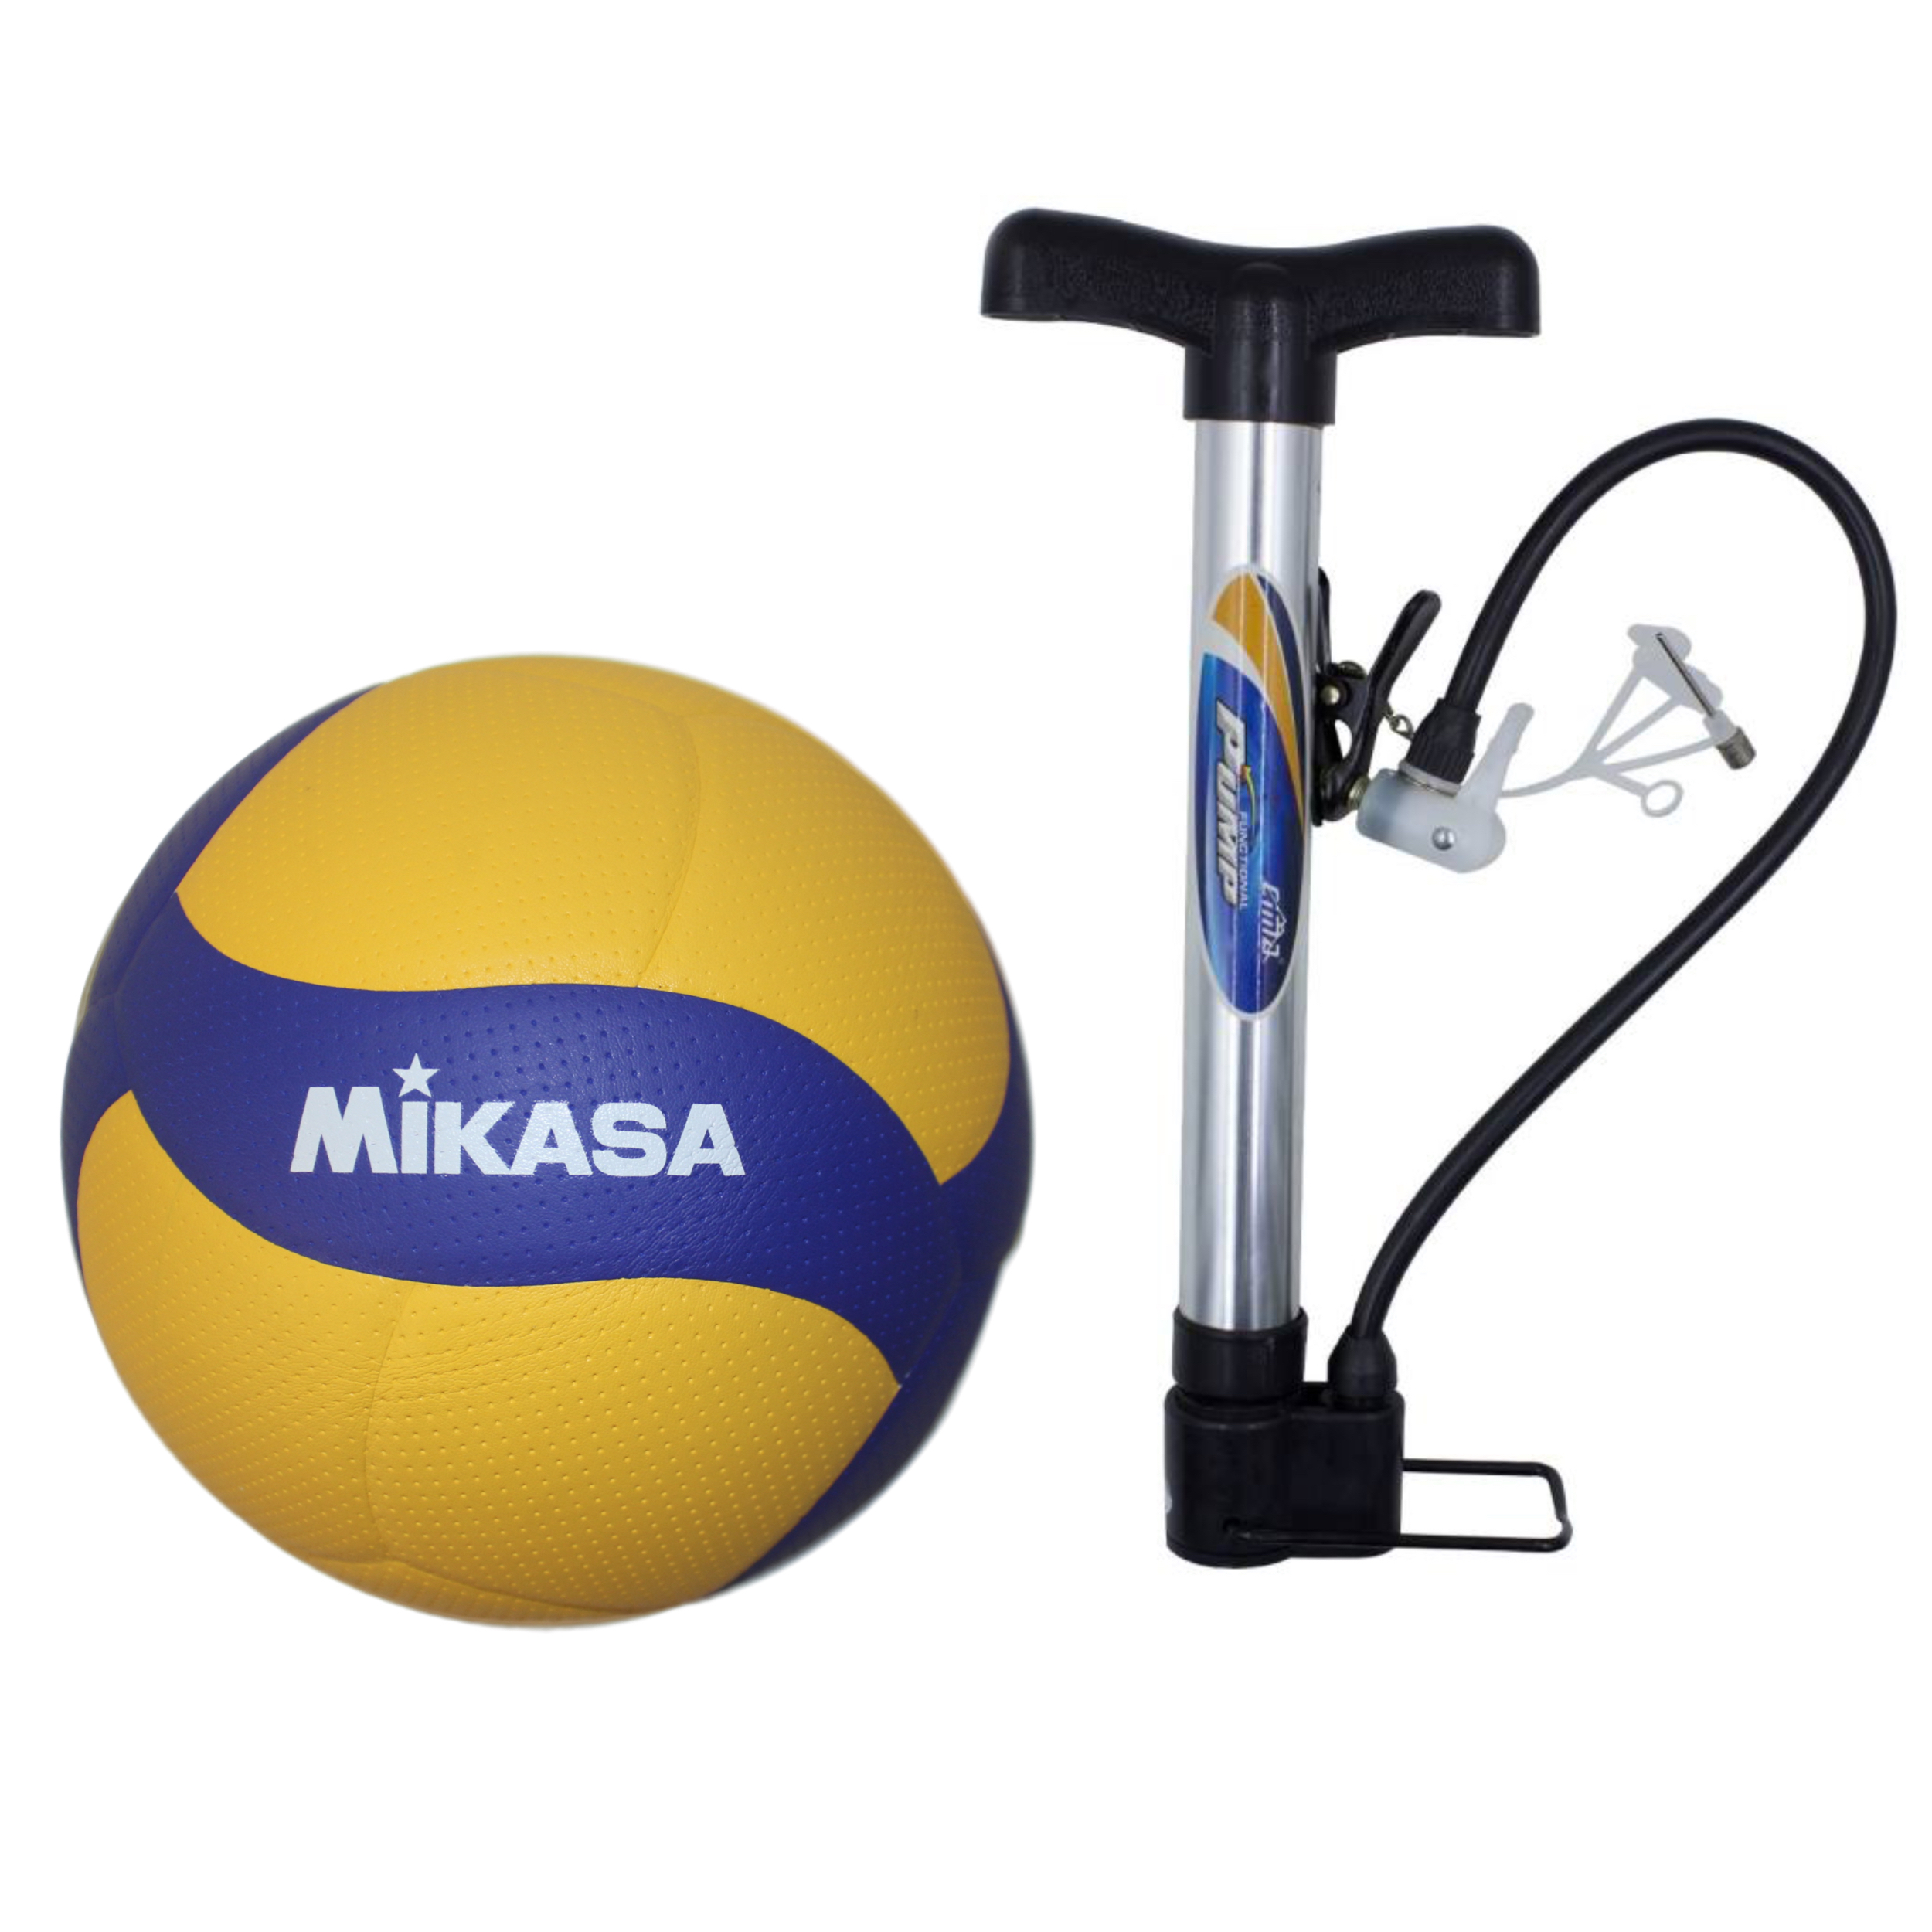 نکته خرید - قیمت روز توپ والیبال میکاسا مدل V200W به همراه تلمبه خرید